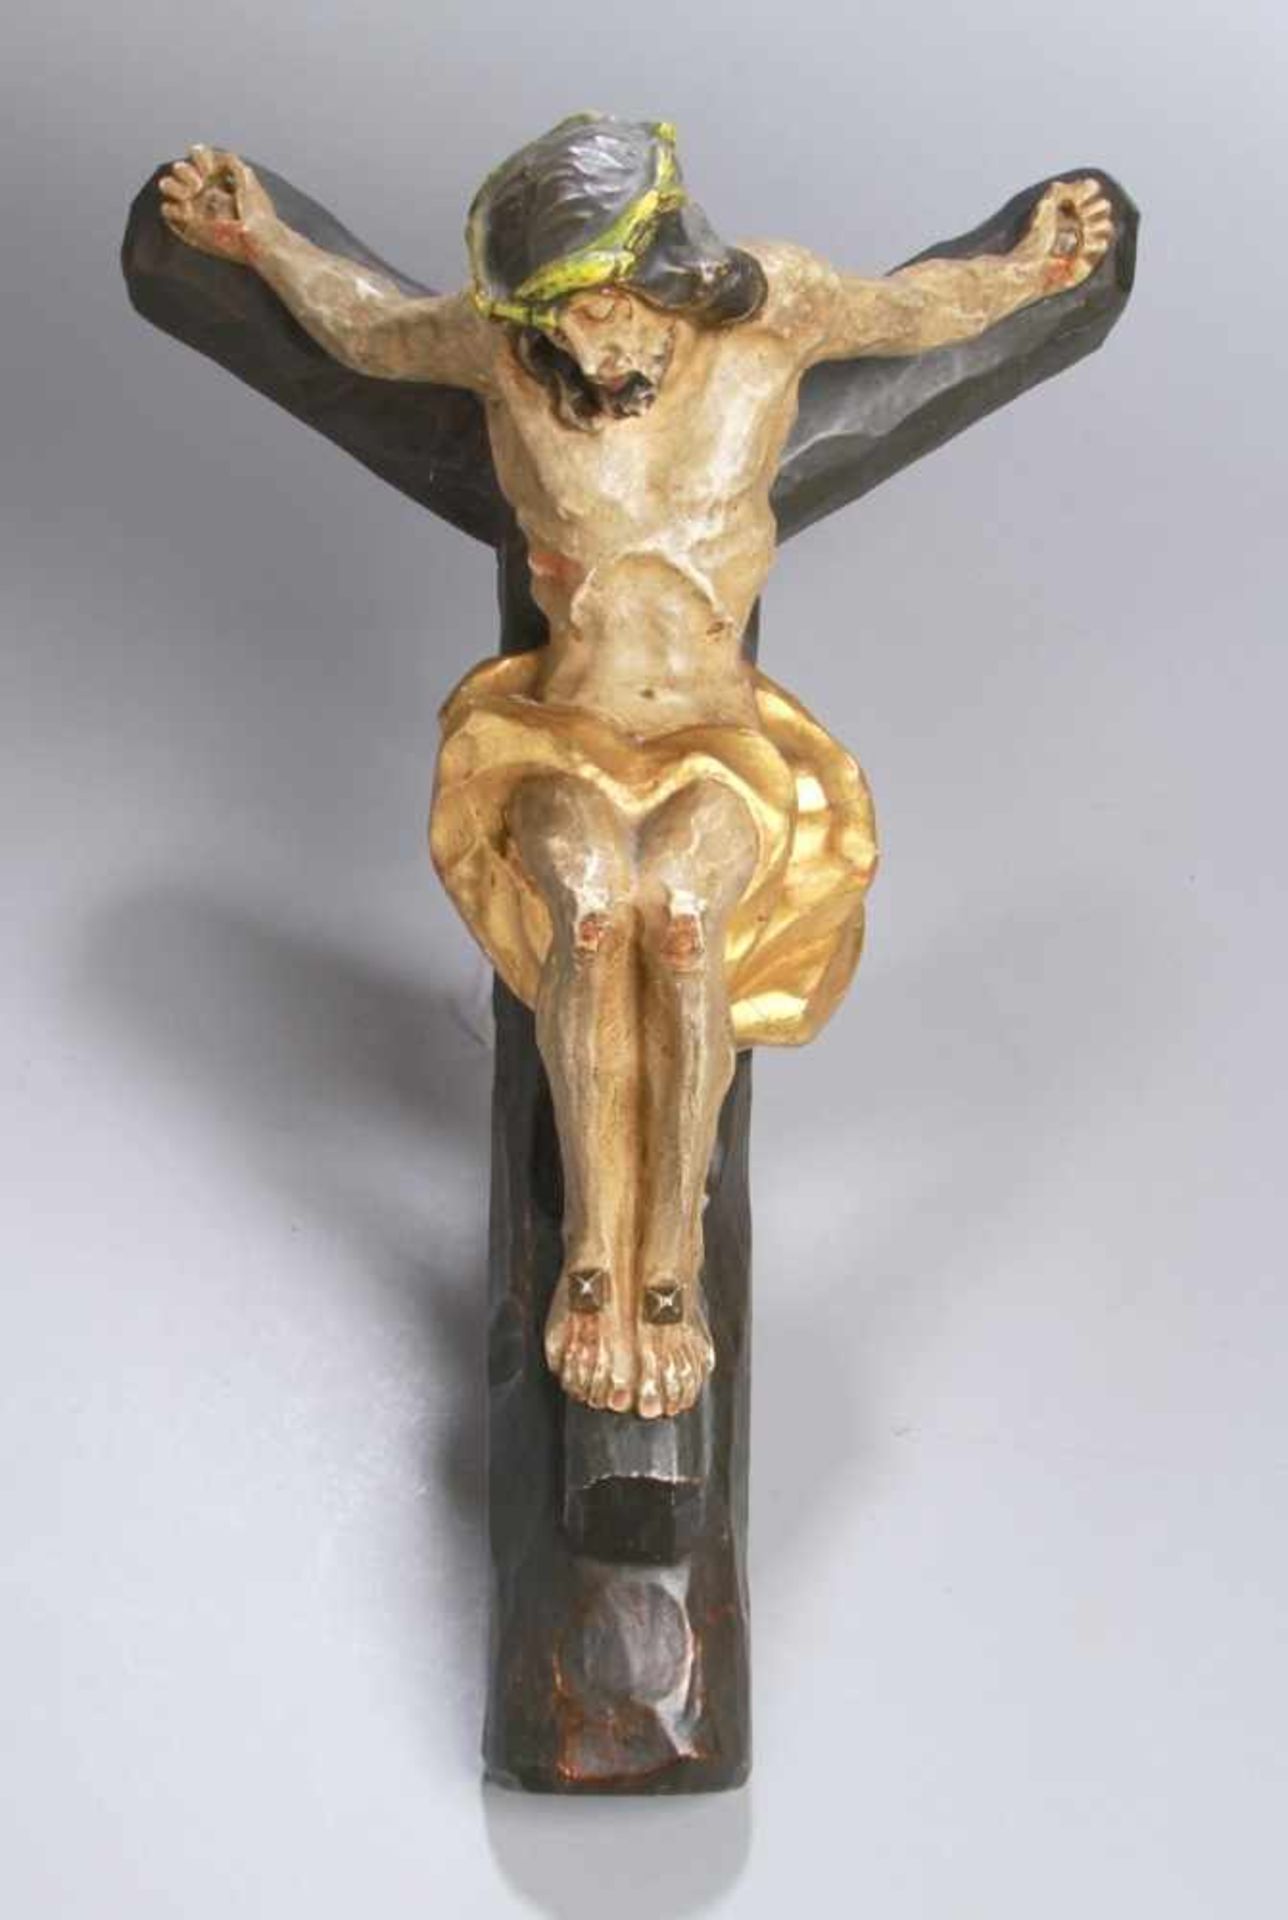 Holz-Wandkruzifix, süddt., 1. Hälfte 20. Jh., an gegabeltem Pflock vollplastischer CorpusChristi als